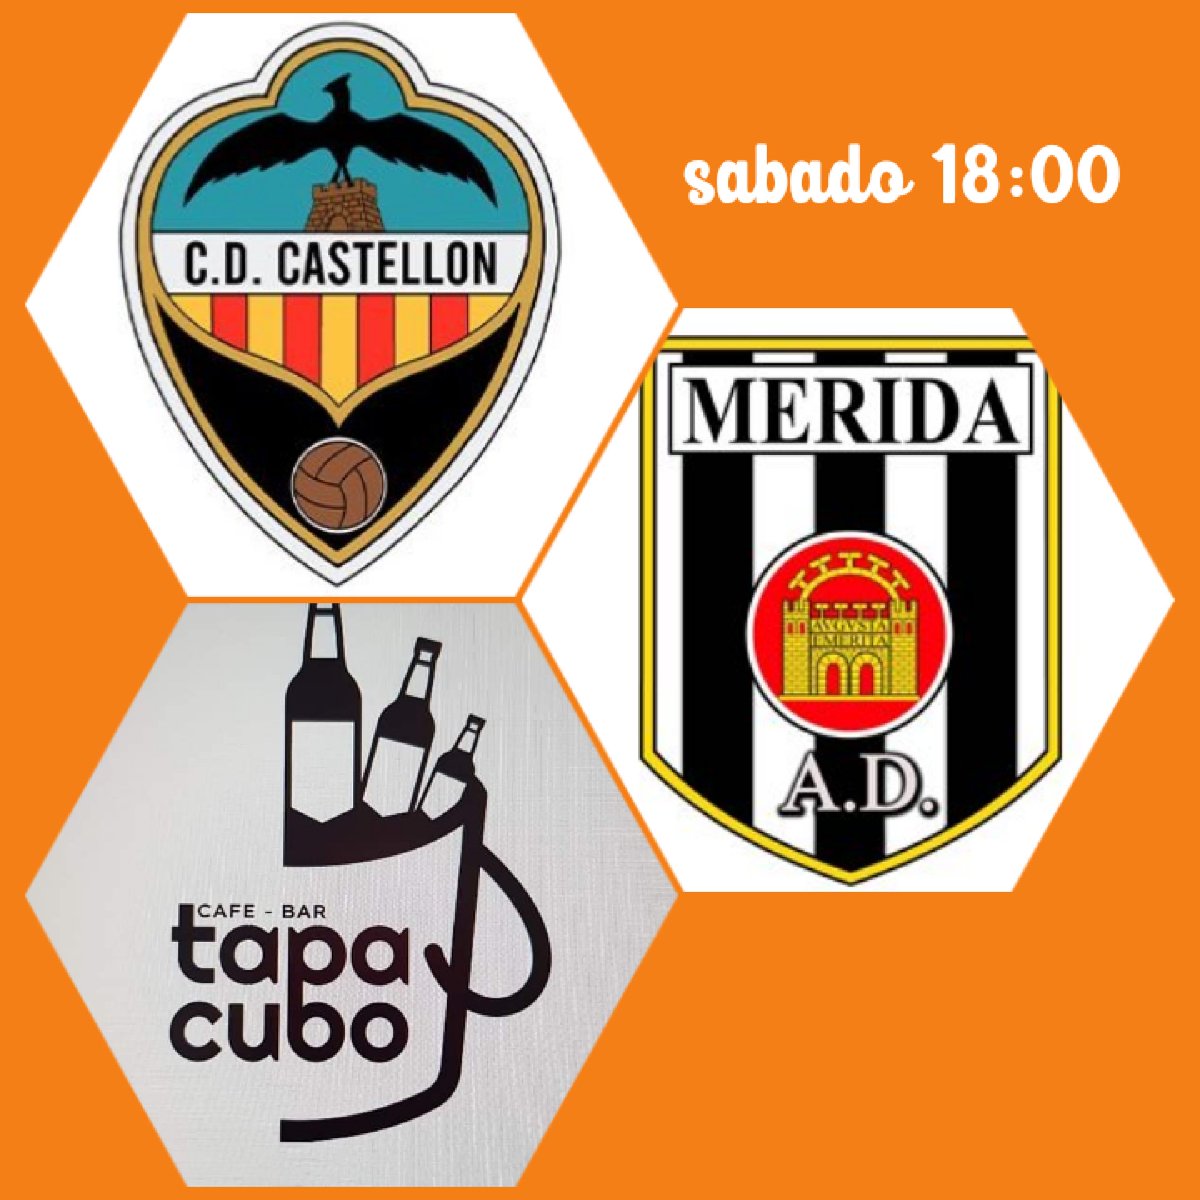 Mañana sabado pondremos #Castellon_merida Venga @Merida_AD a treros los puntos SI SE PUEDE💪💪💪💪 Sabado a las 18:00 @DBaresyTapas @baresenmerida @comerenmerida @fut_bar